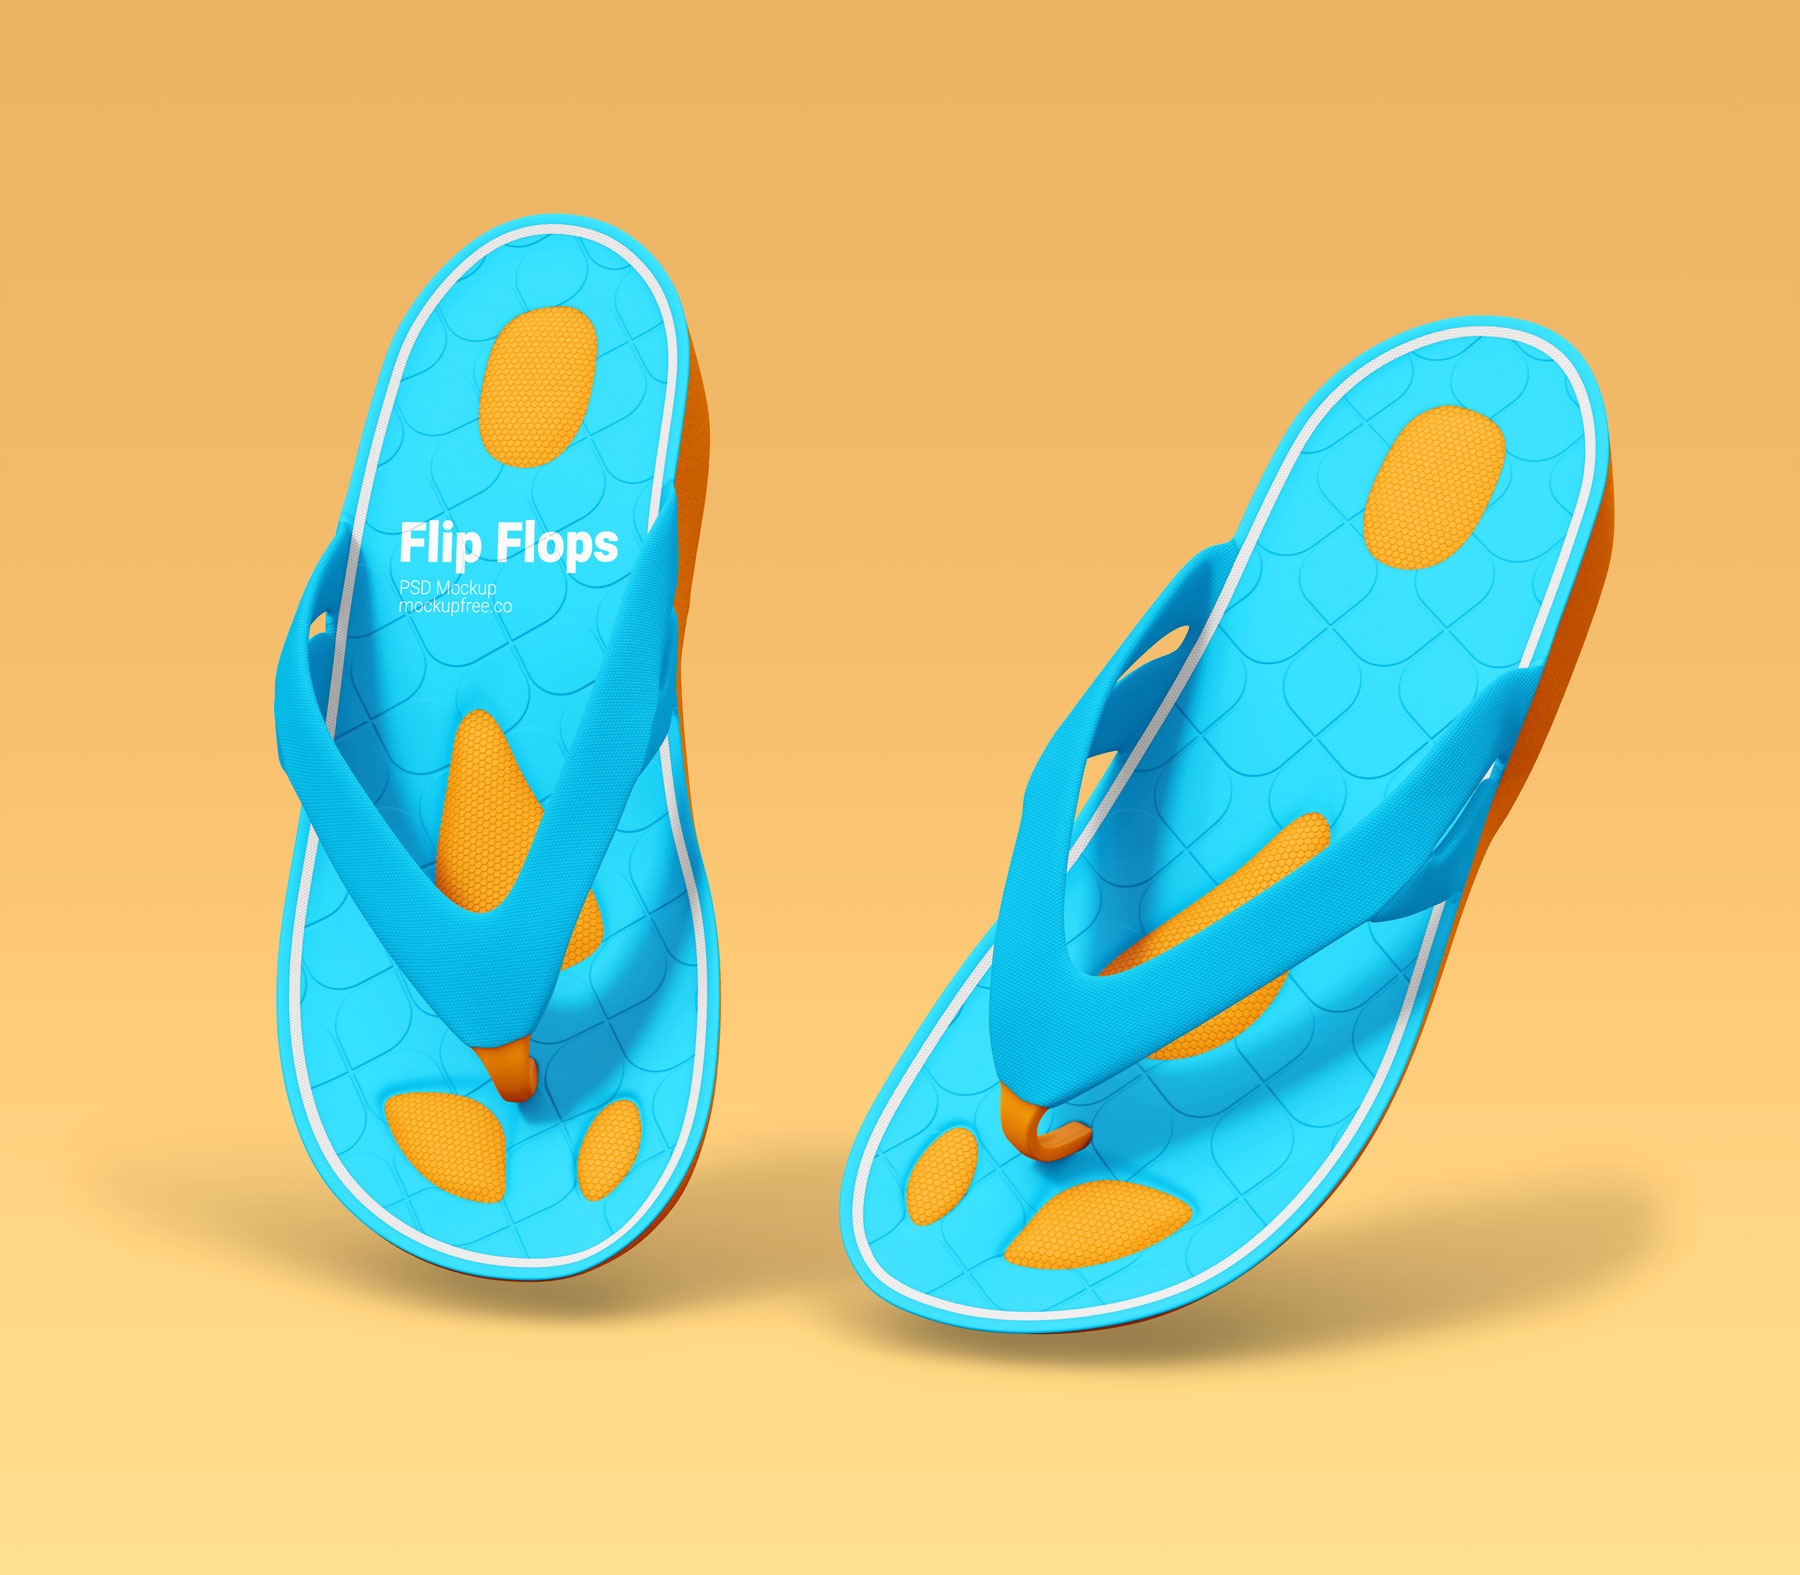 Free Flip Flops Mockups PSD set